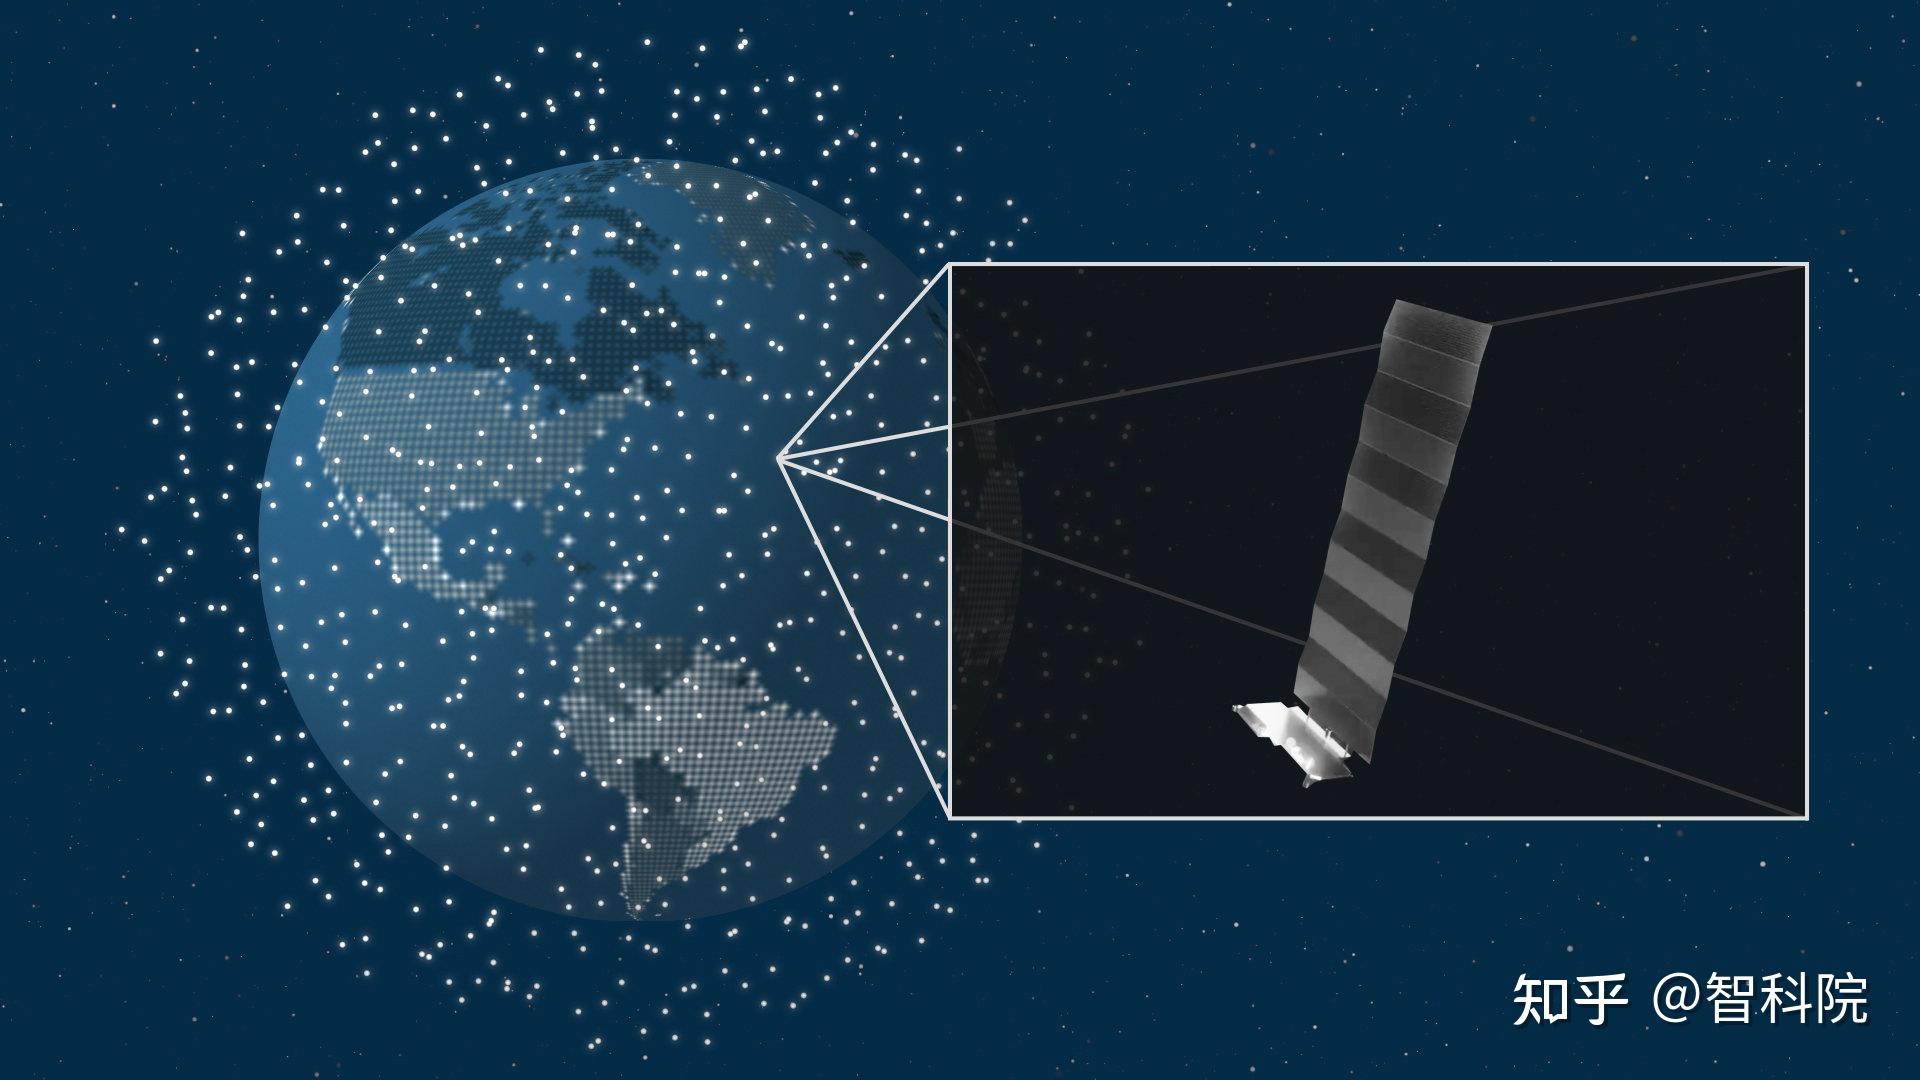 什么是 Starlink 星链？埃隆·馬斯克提供的卫星互联网服务介绍和解释